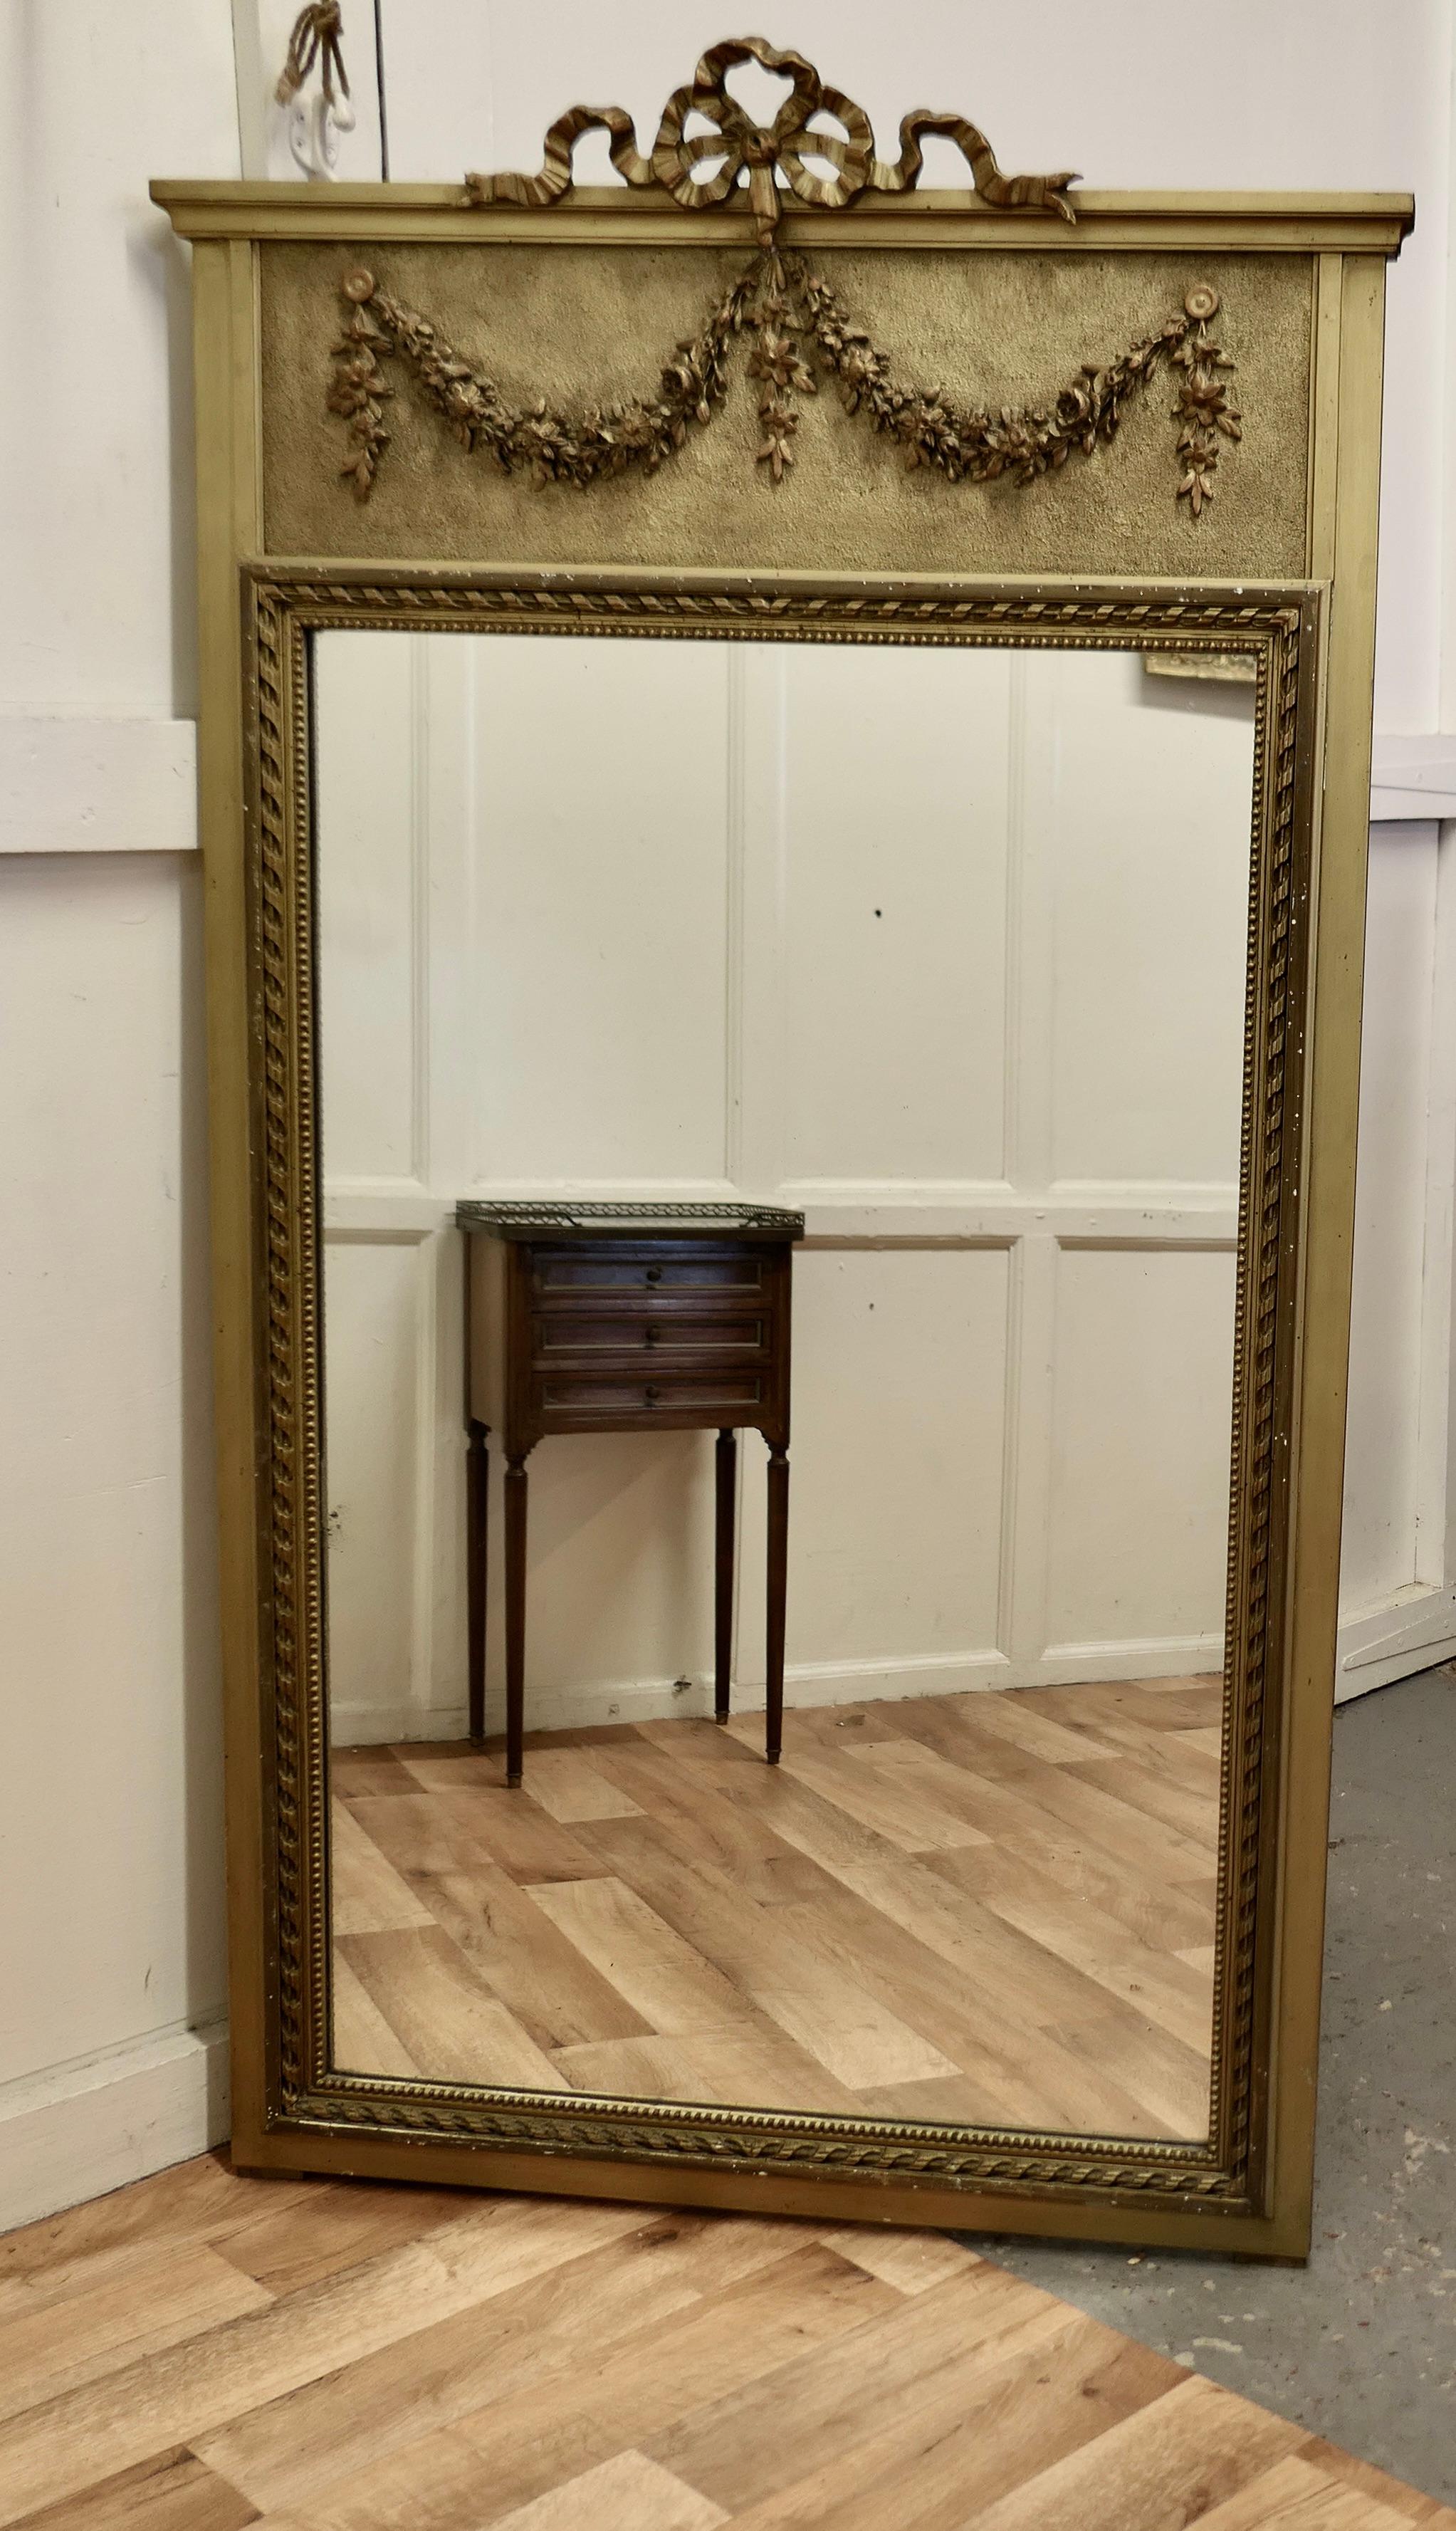 Miroir Console Pier de style Trumeau français  

Ce grand miroir est une pièce élégante, il a un cadre doré vieilli avec des guirlandes et des rubans décorant le haut et le large cadre moulé a une bordure de corde décorative dorée 
Le miroir date du